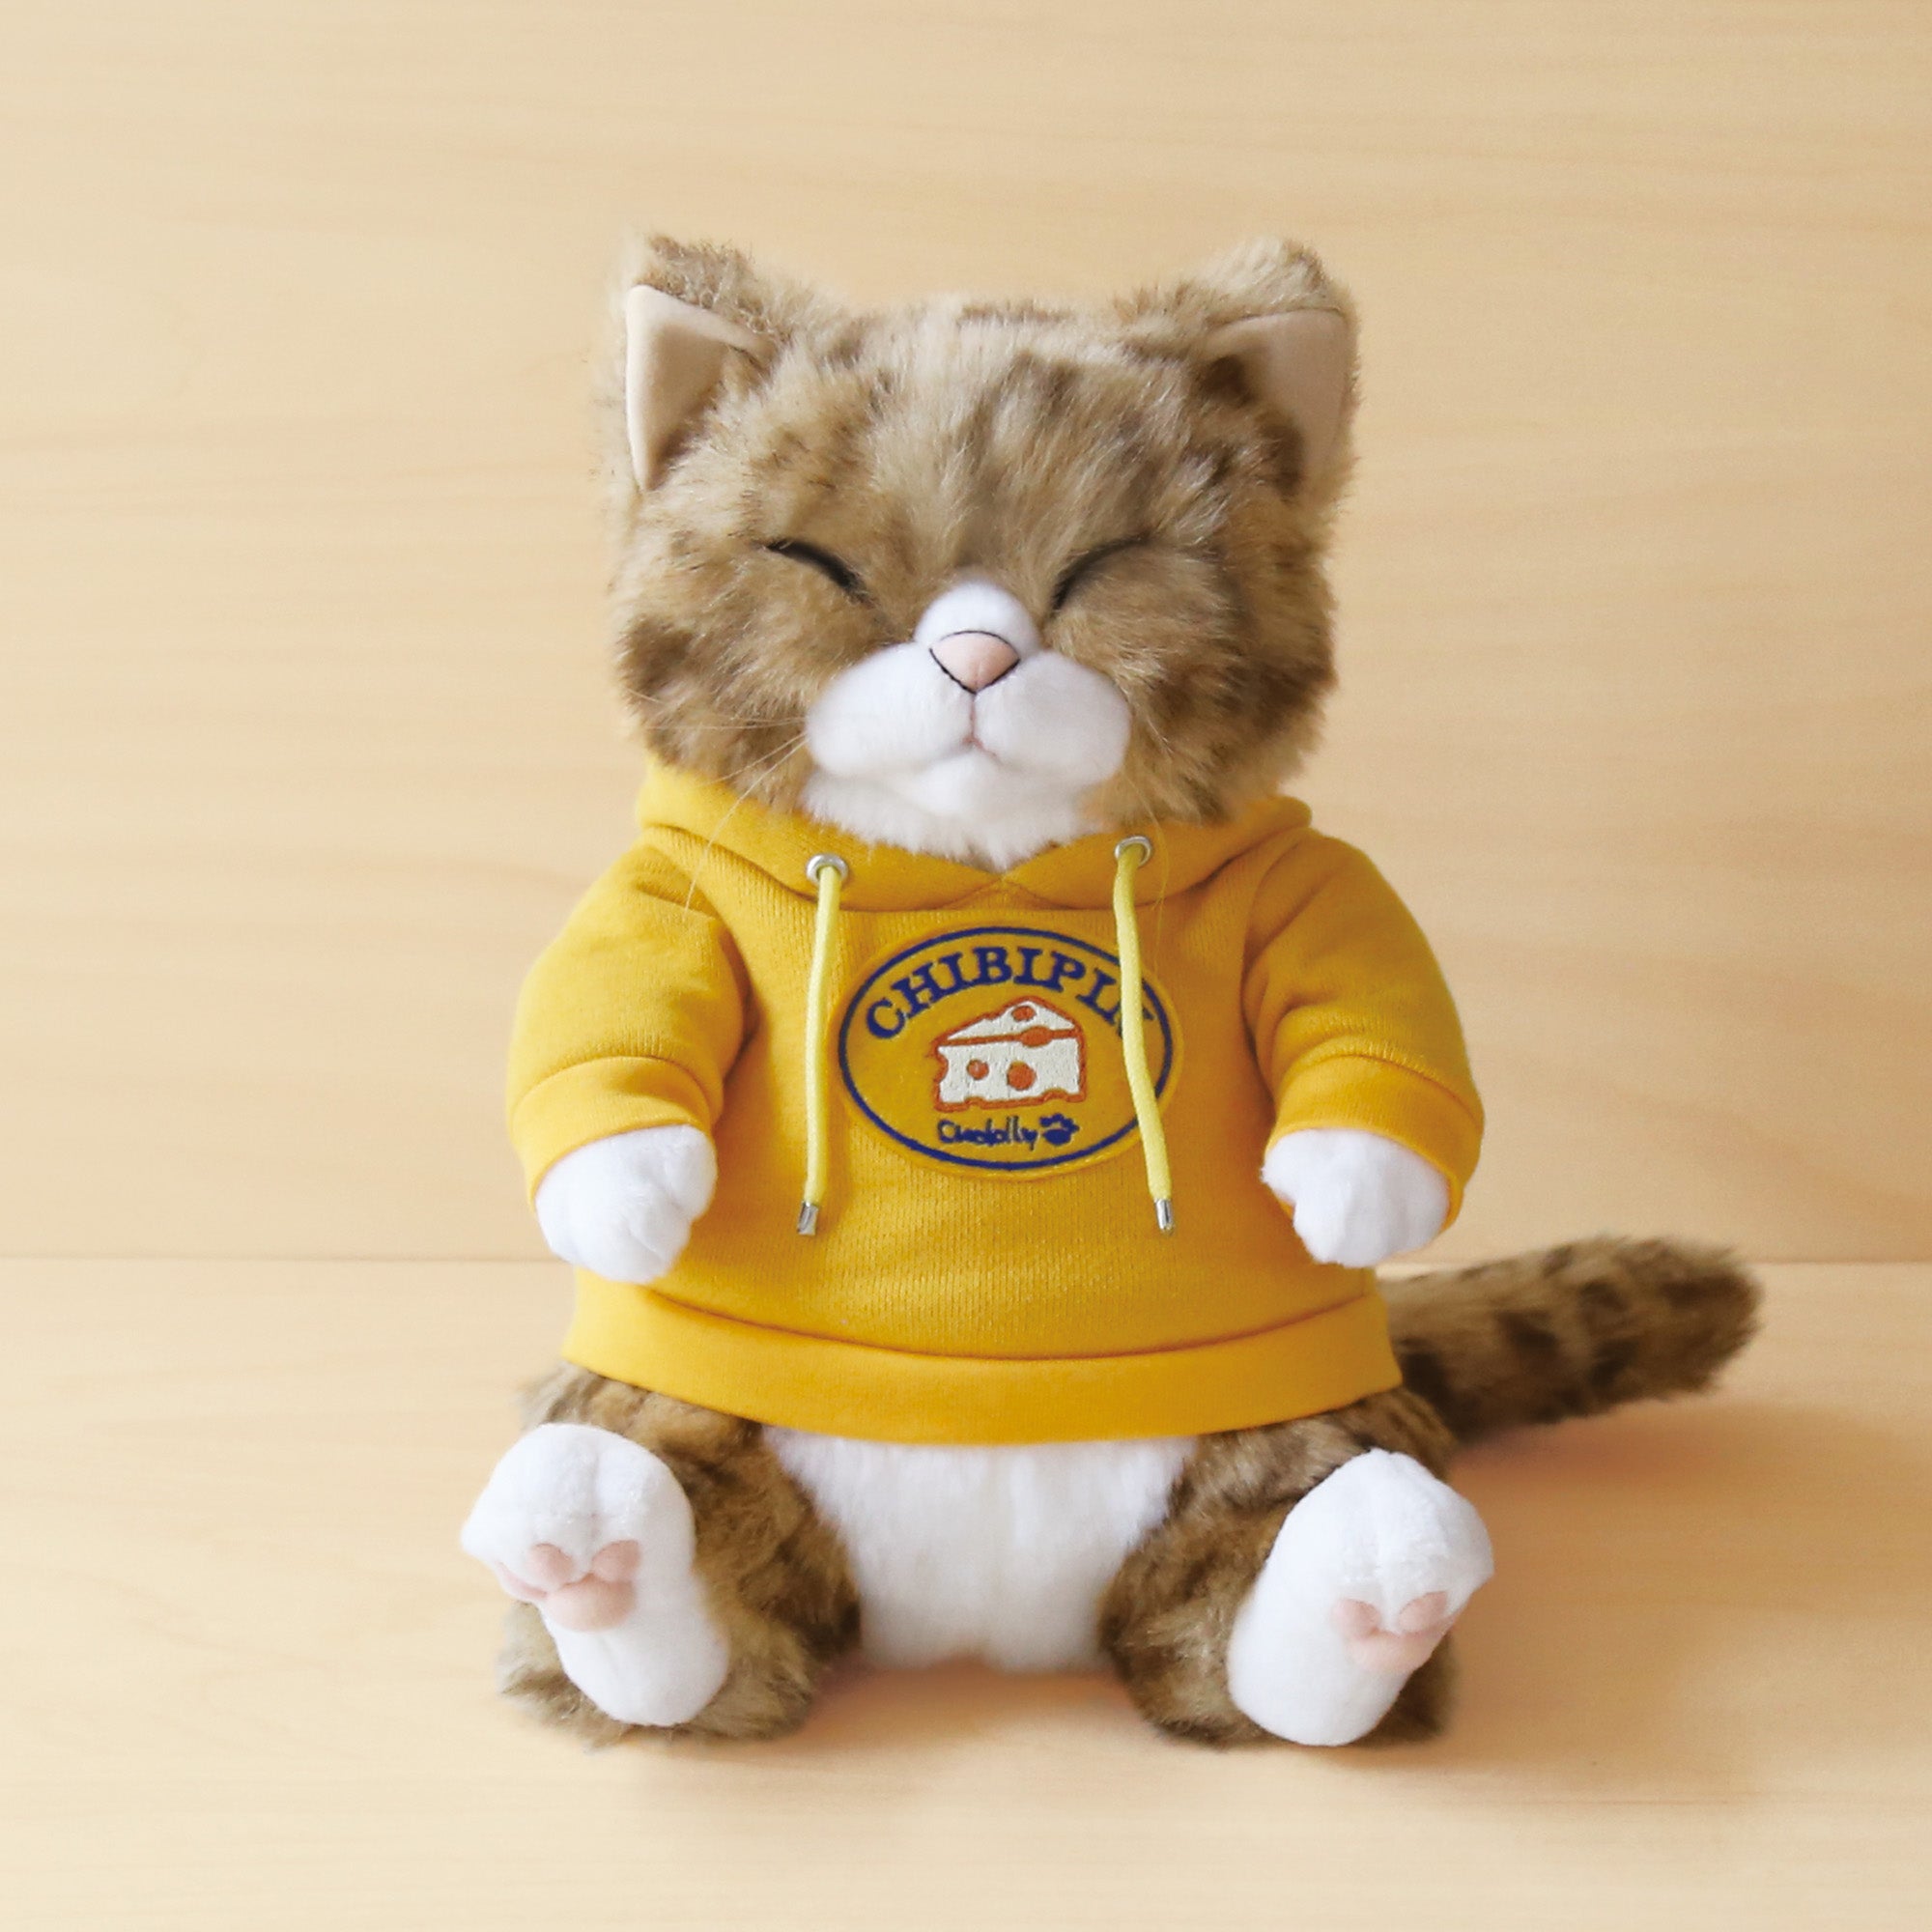 Cuddly (カドリー) 公式オンラインショップ 猫のぬいぐるみ – Cuddly ...